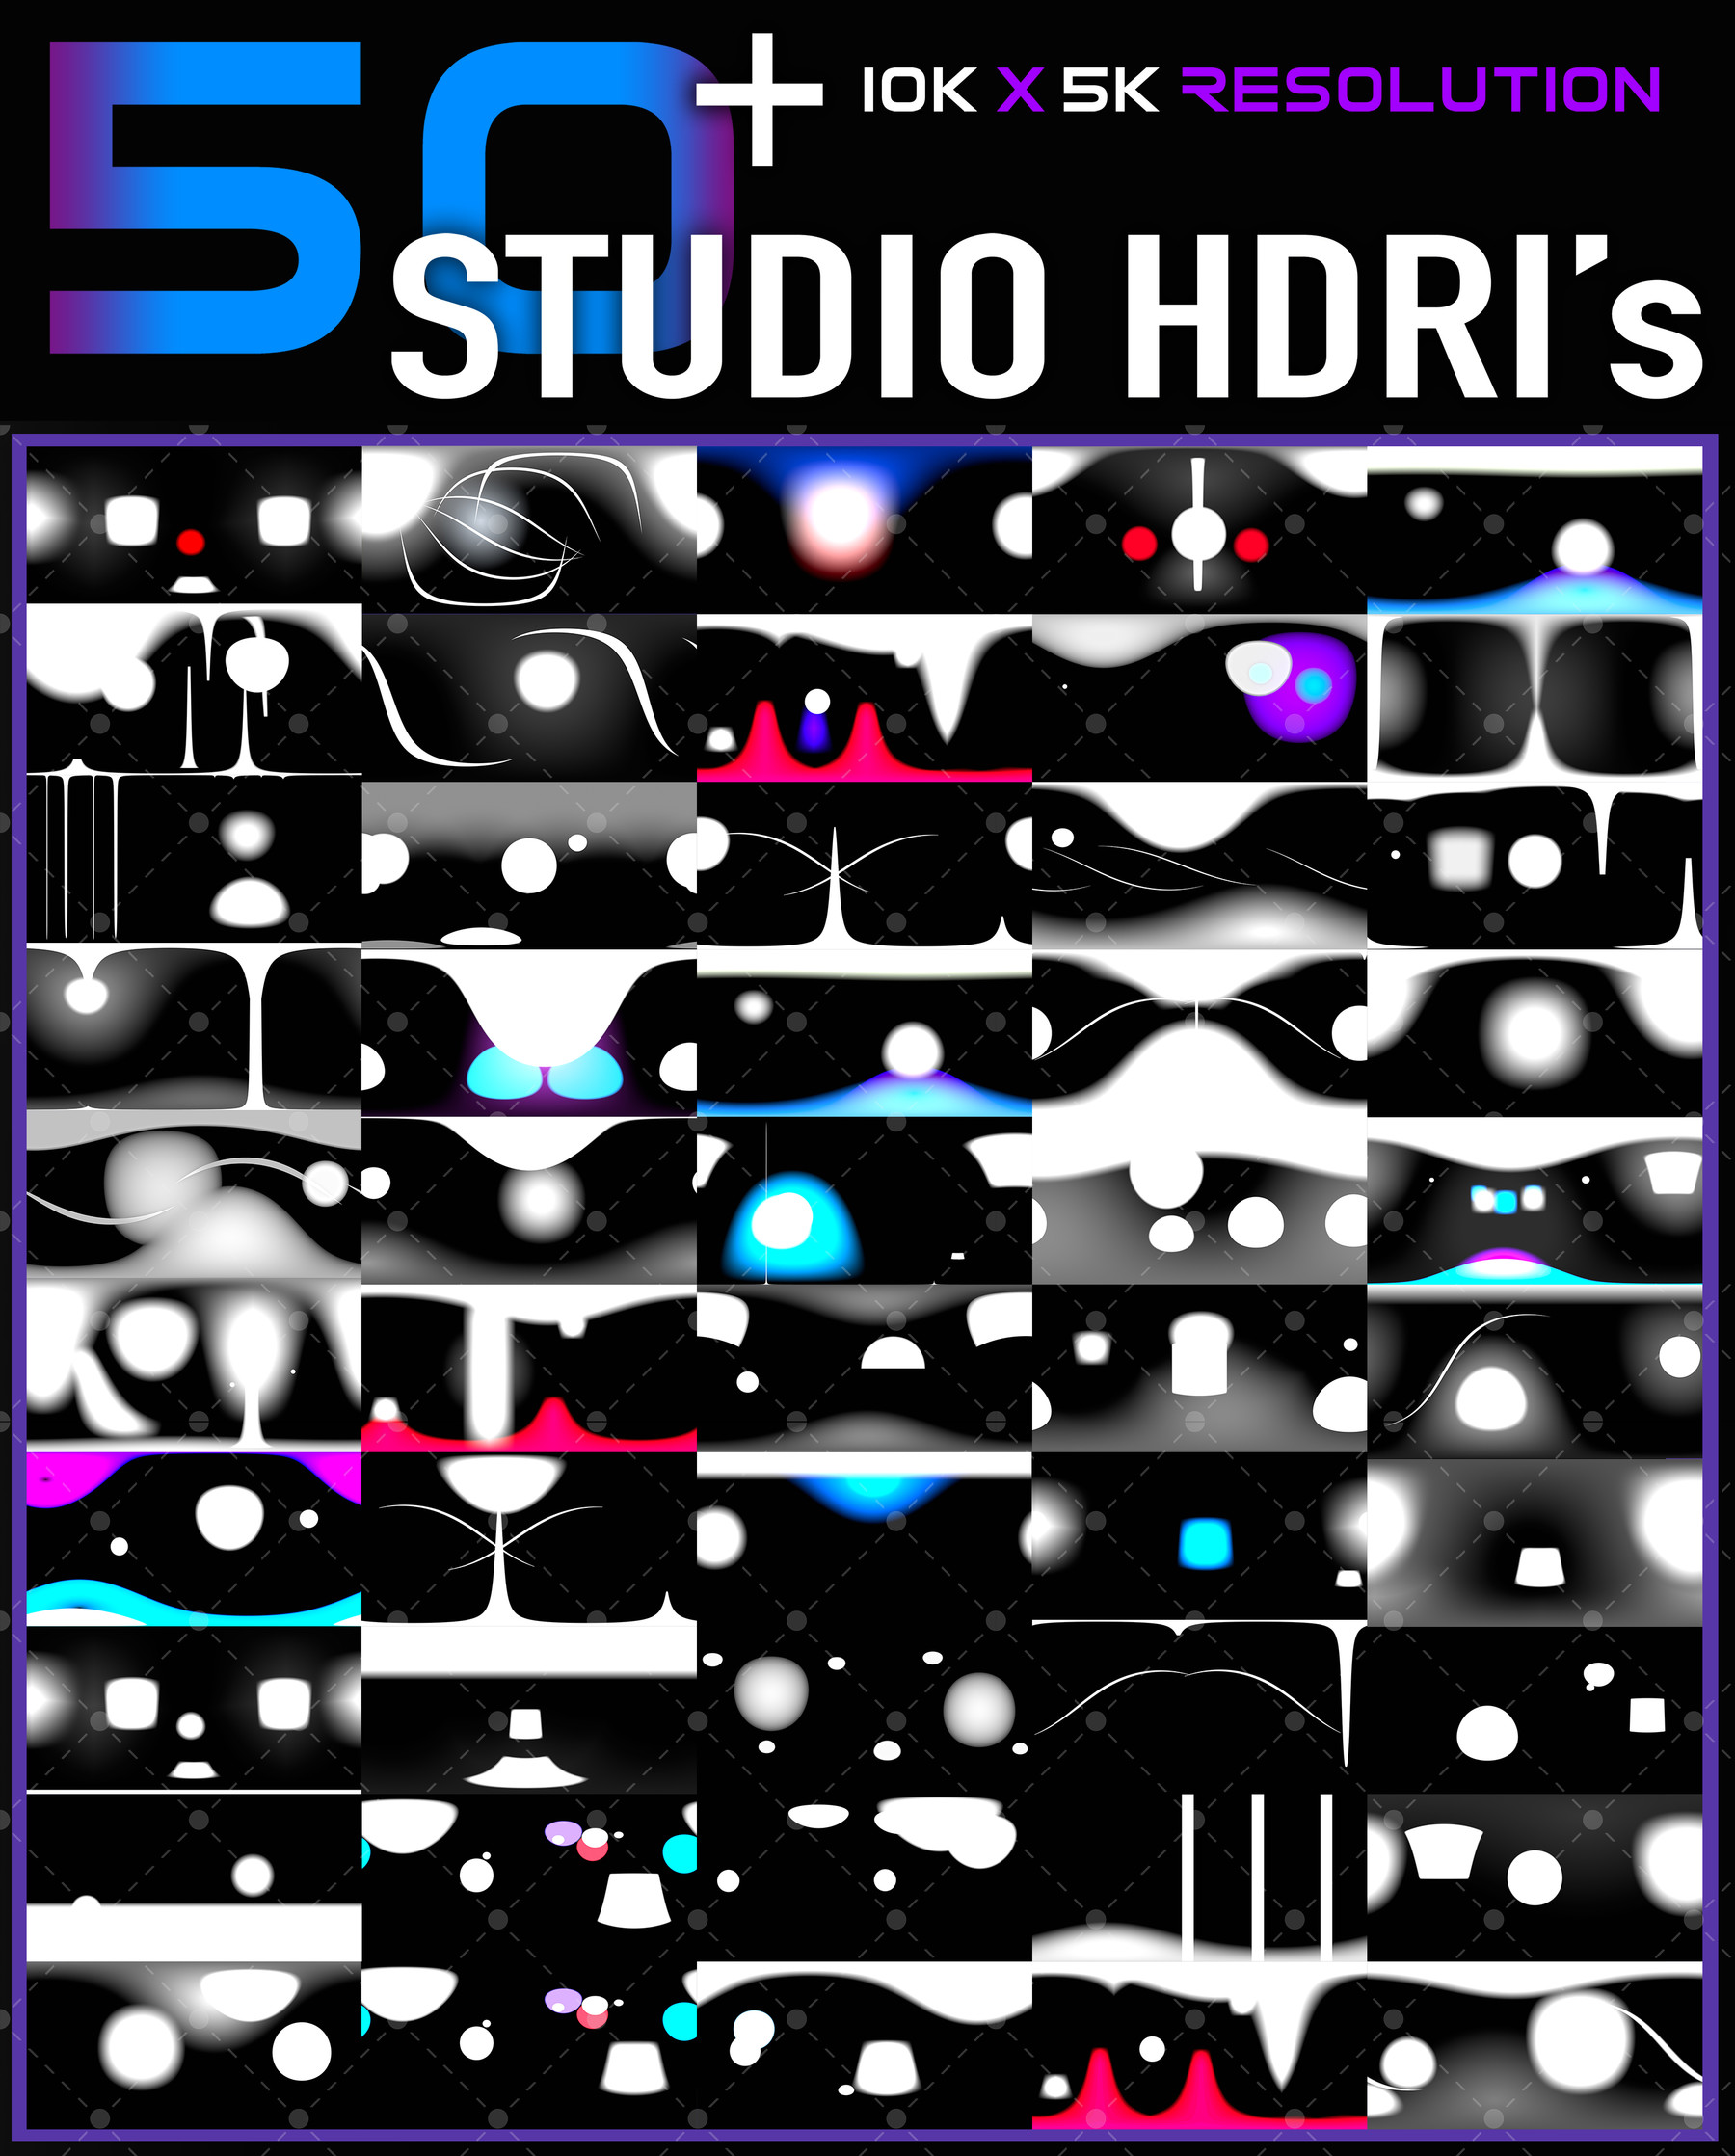 hdri studio pack 2.0 download